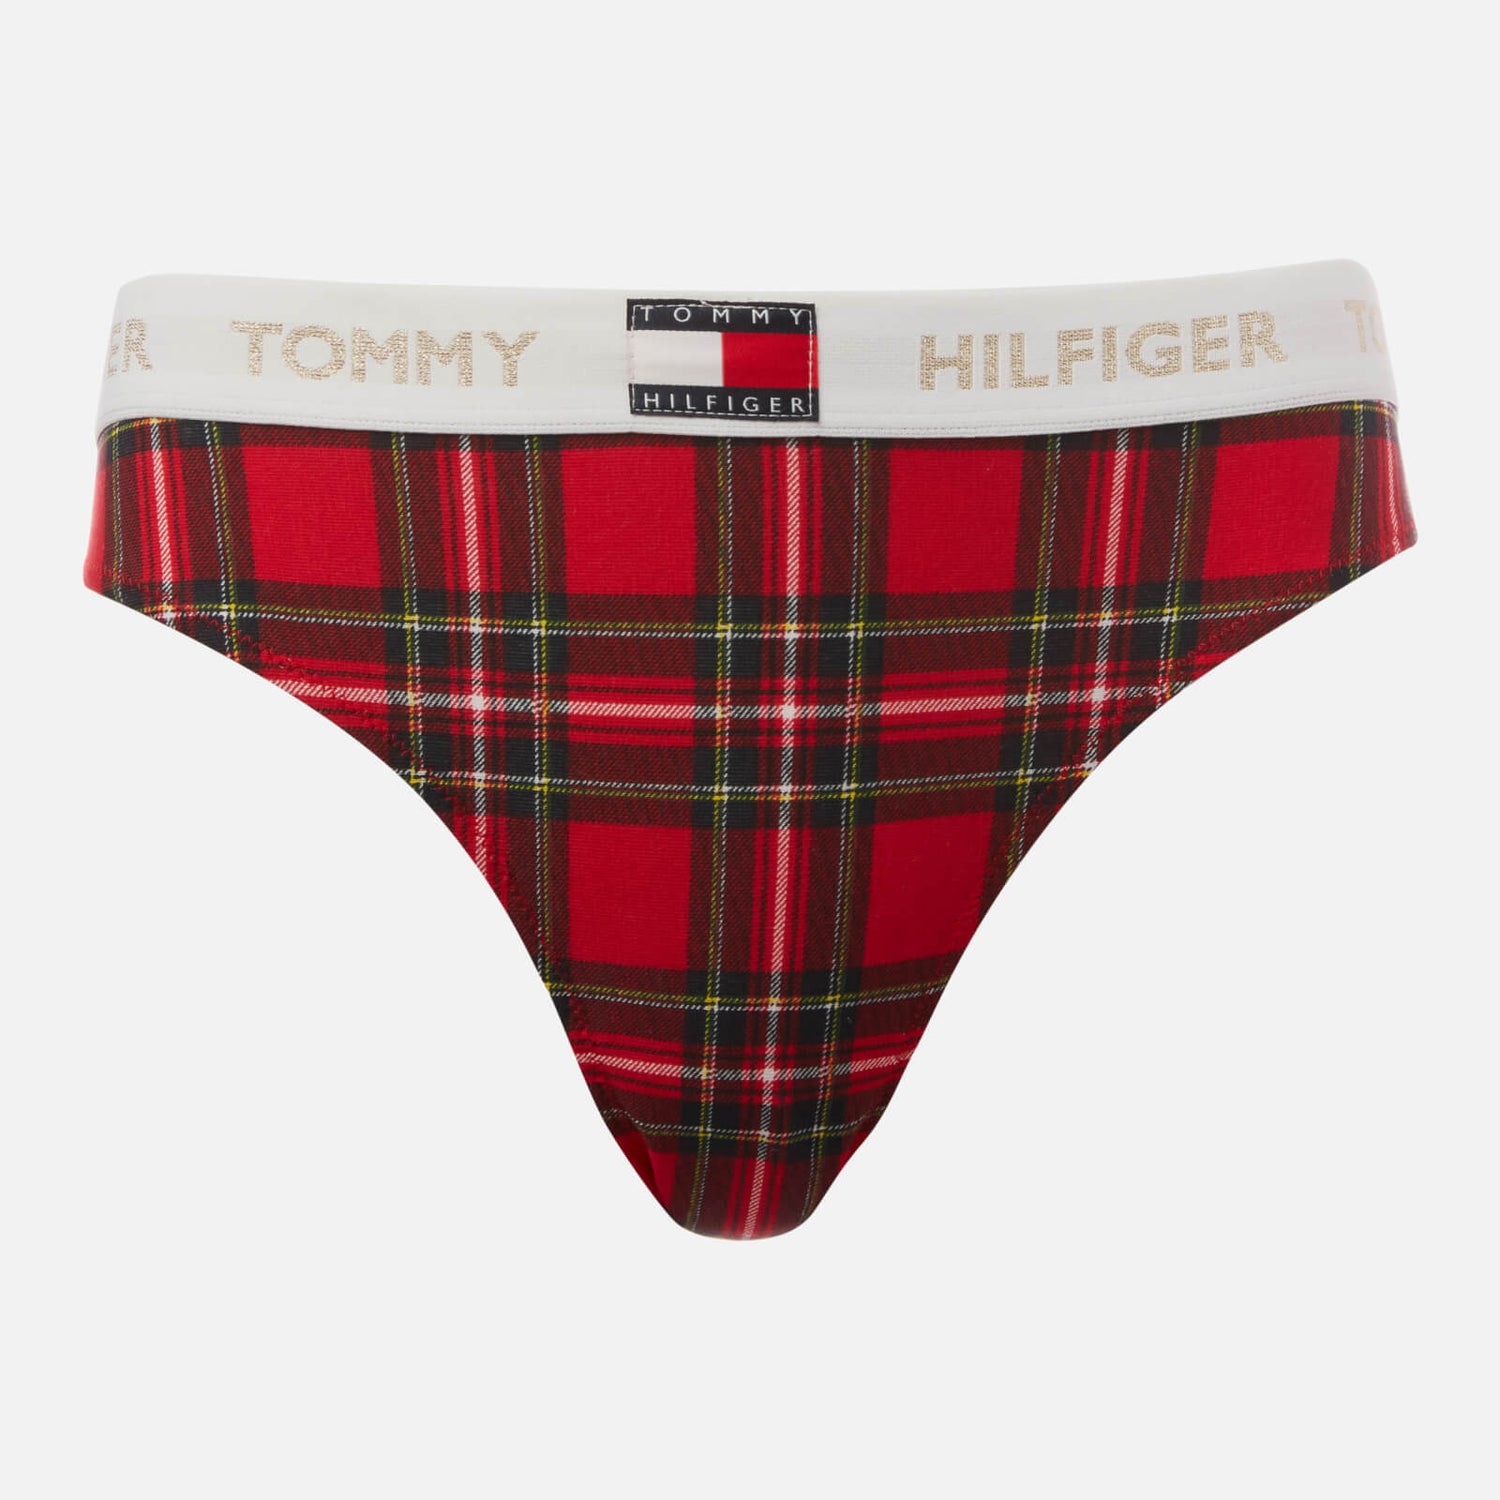 Tommy Hilfiger Women's Bikini Print - Tartan Red